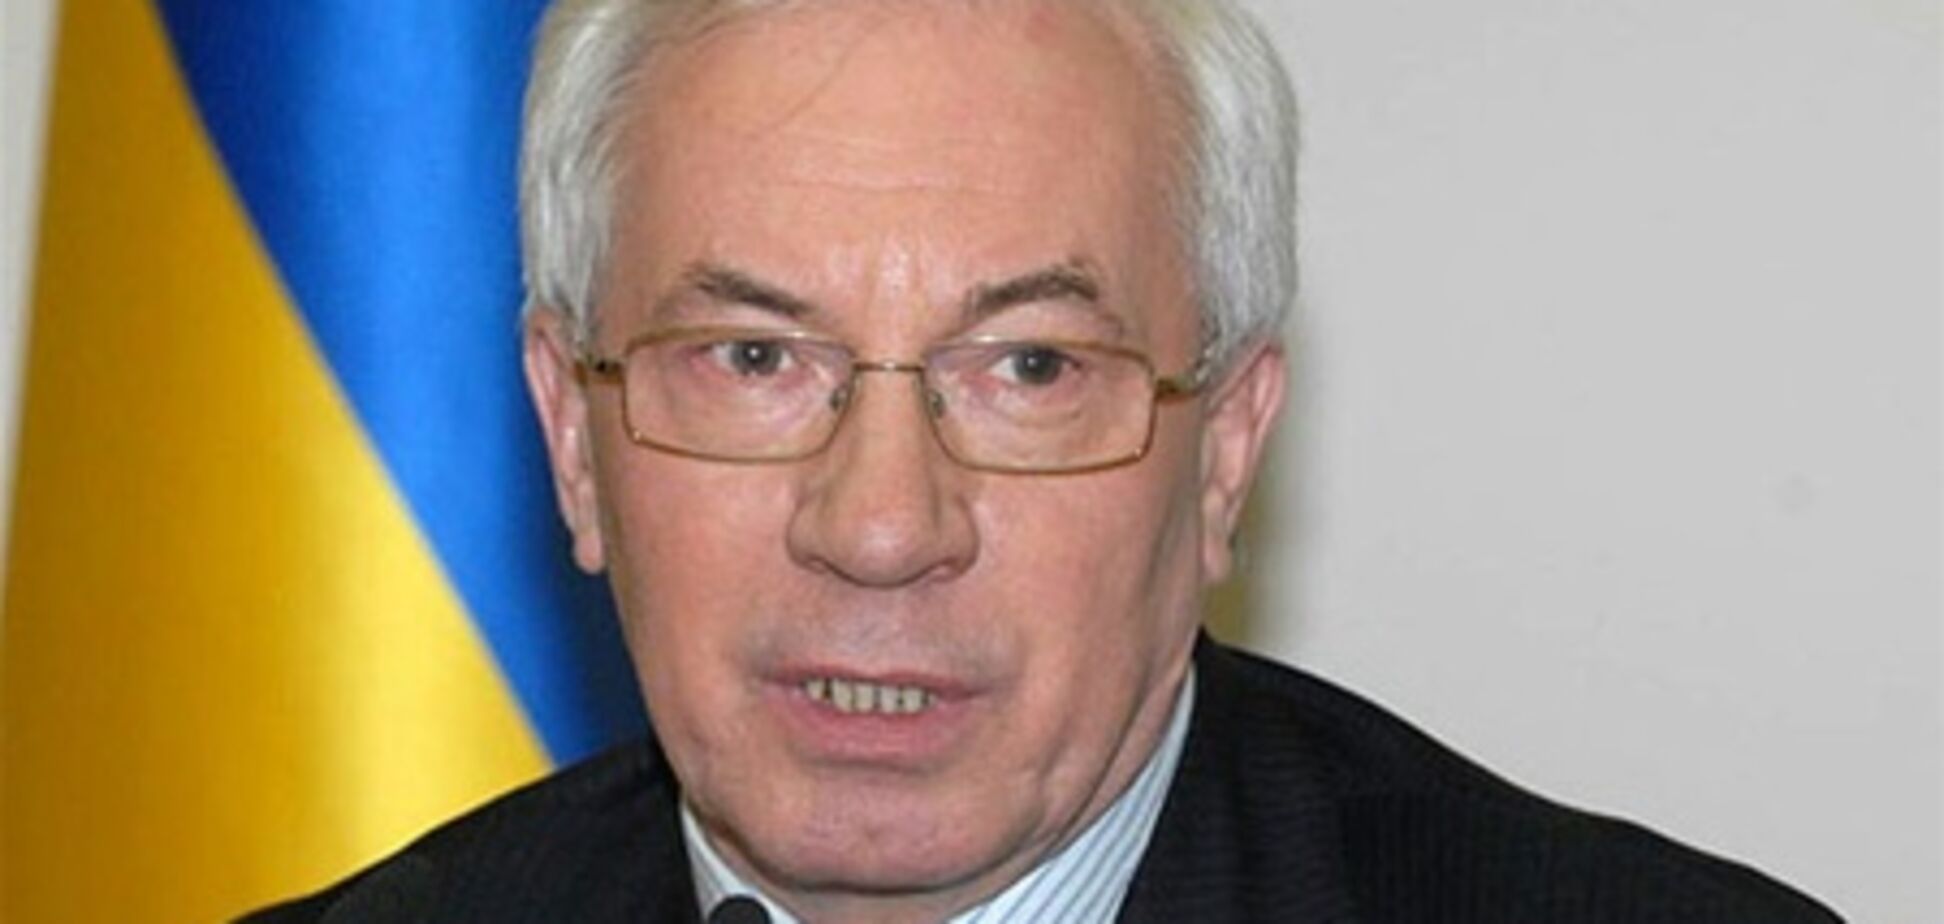 Кабмин разработал план по интеграции Украины в ЕС